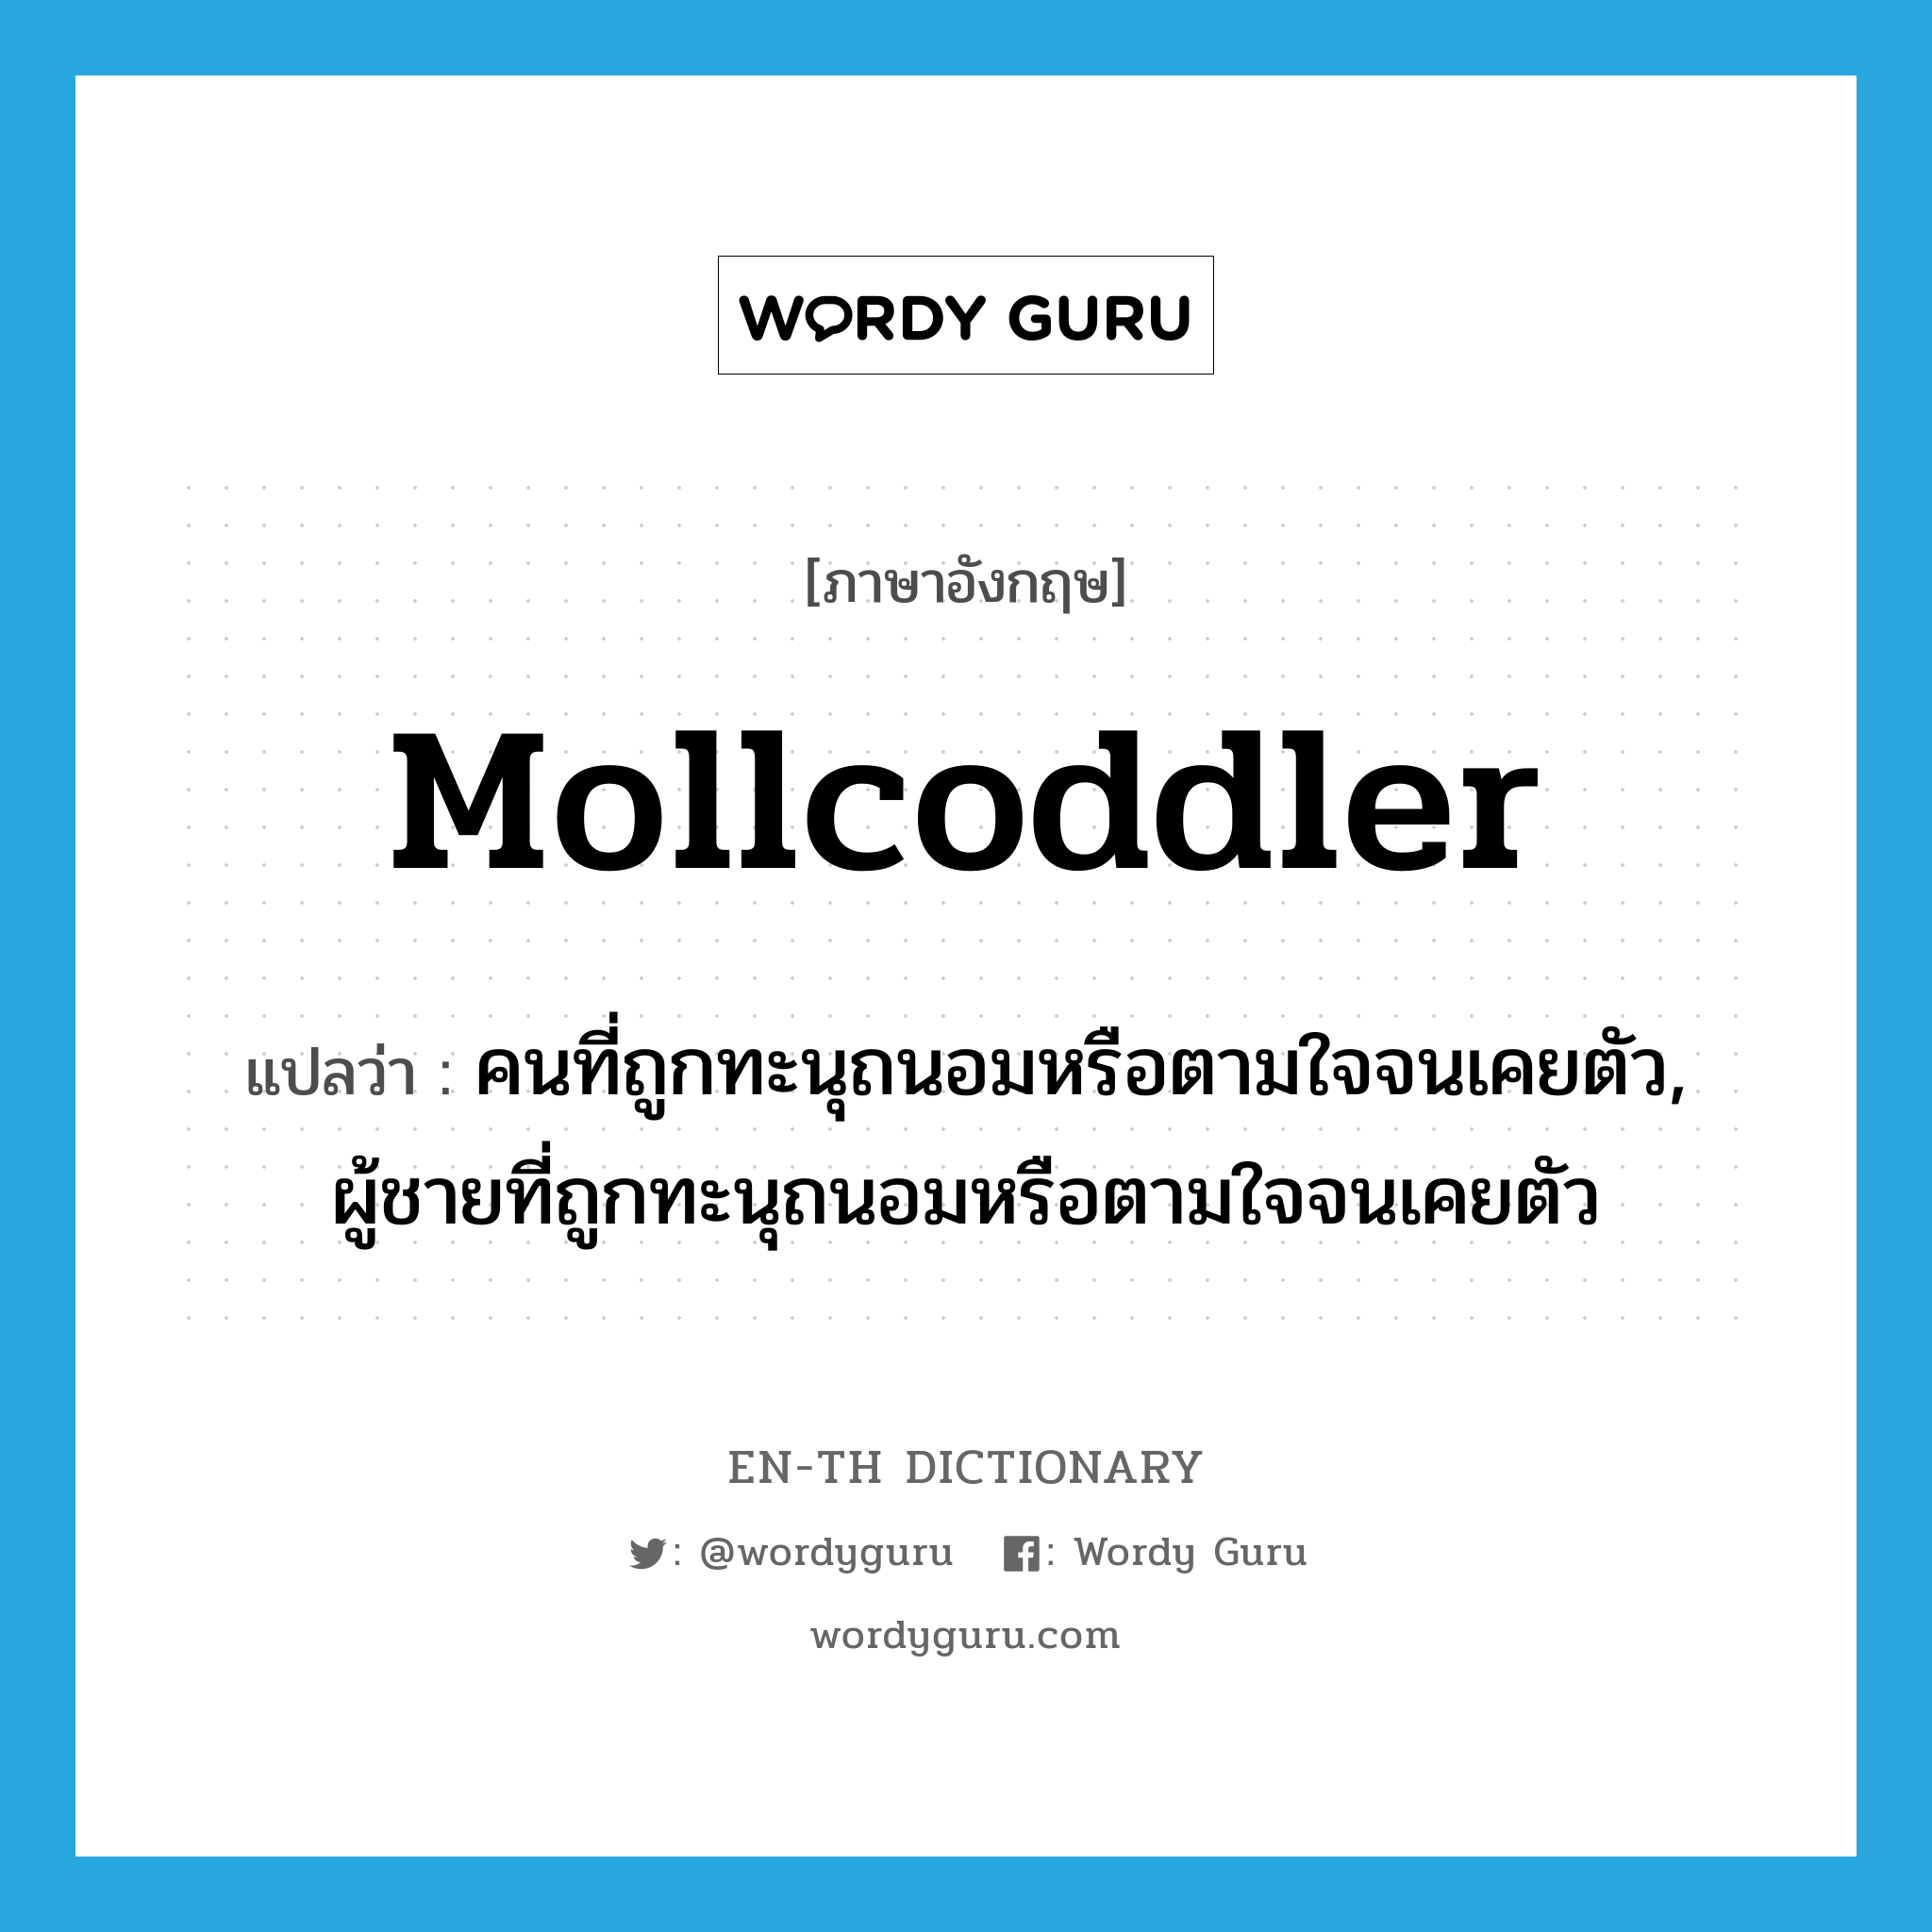 mollcoddler แปลว่า?, คำศัพท์ภาษาอังกฤษ mollcoddler แปลว่า คนที่ถูกทะนุถนอมหรือตามใจจนเคยตัว, ผู้ชายที่ถูกทะนุถนอมหรือตามใจจนเคยตัว ประเภท N หมวด N